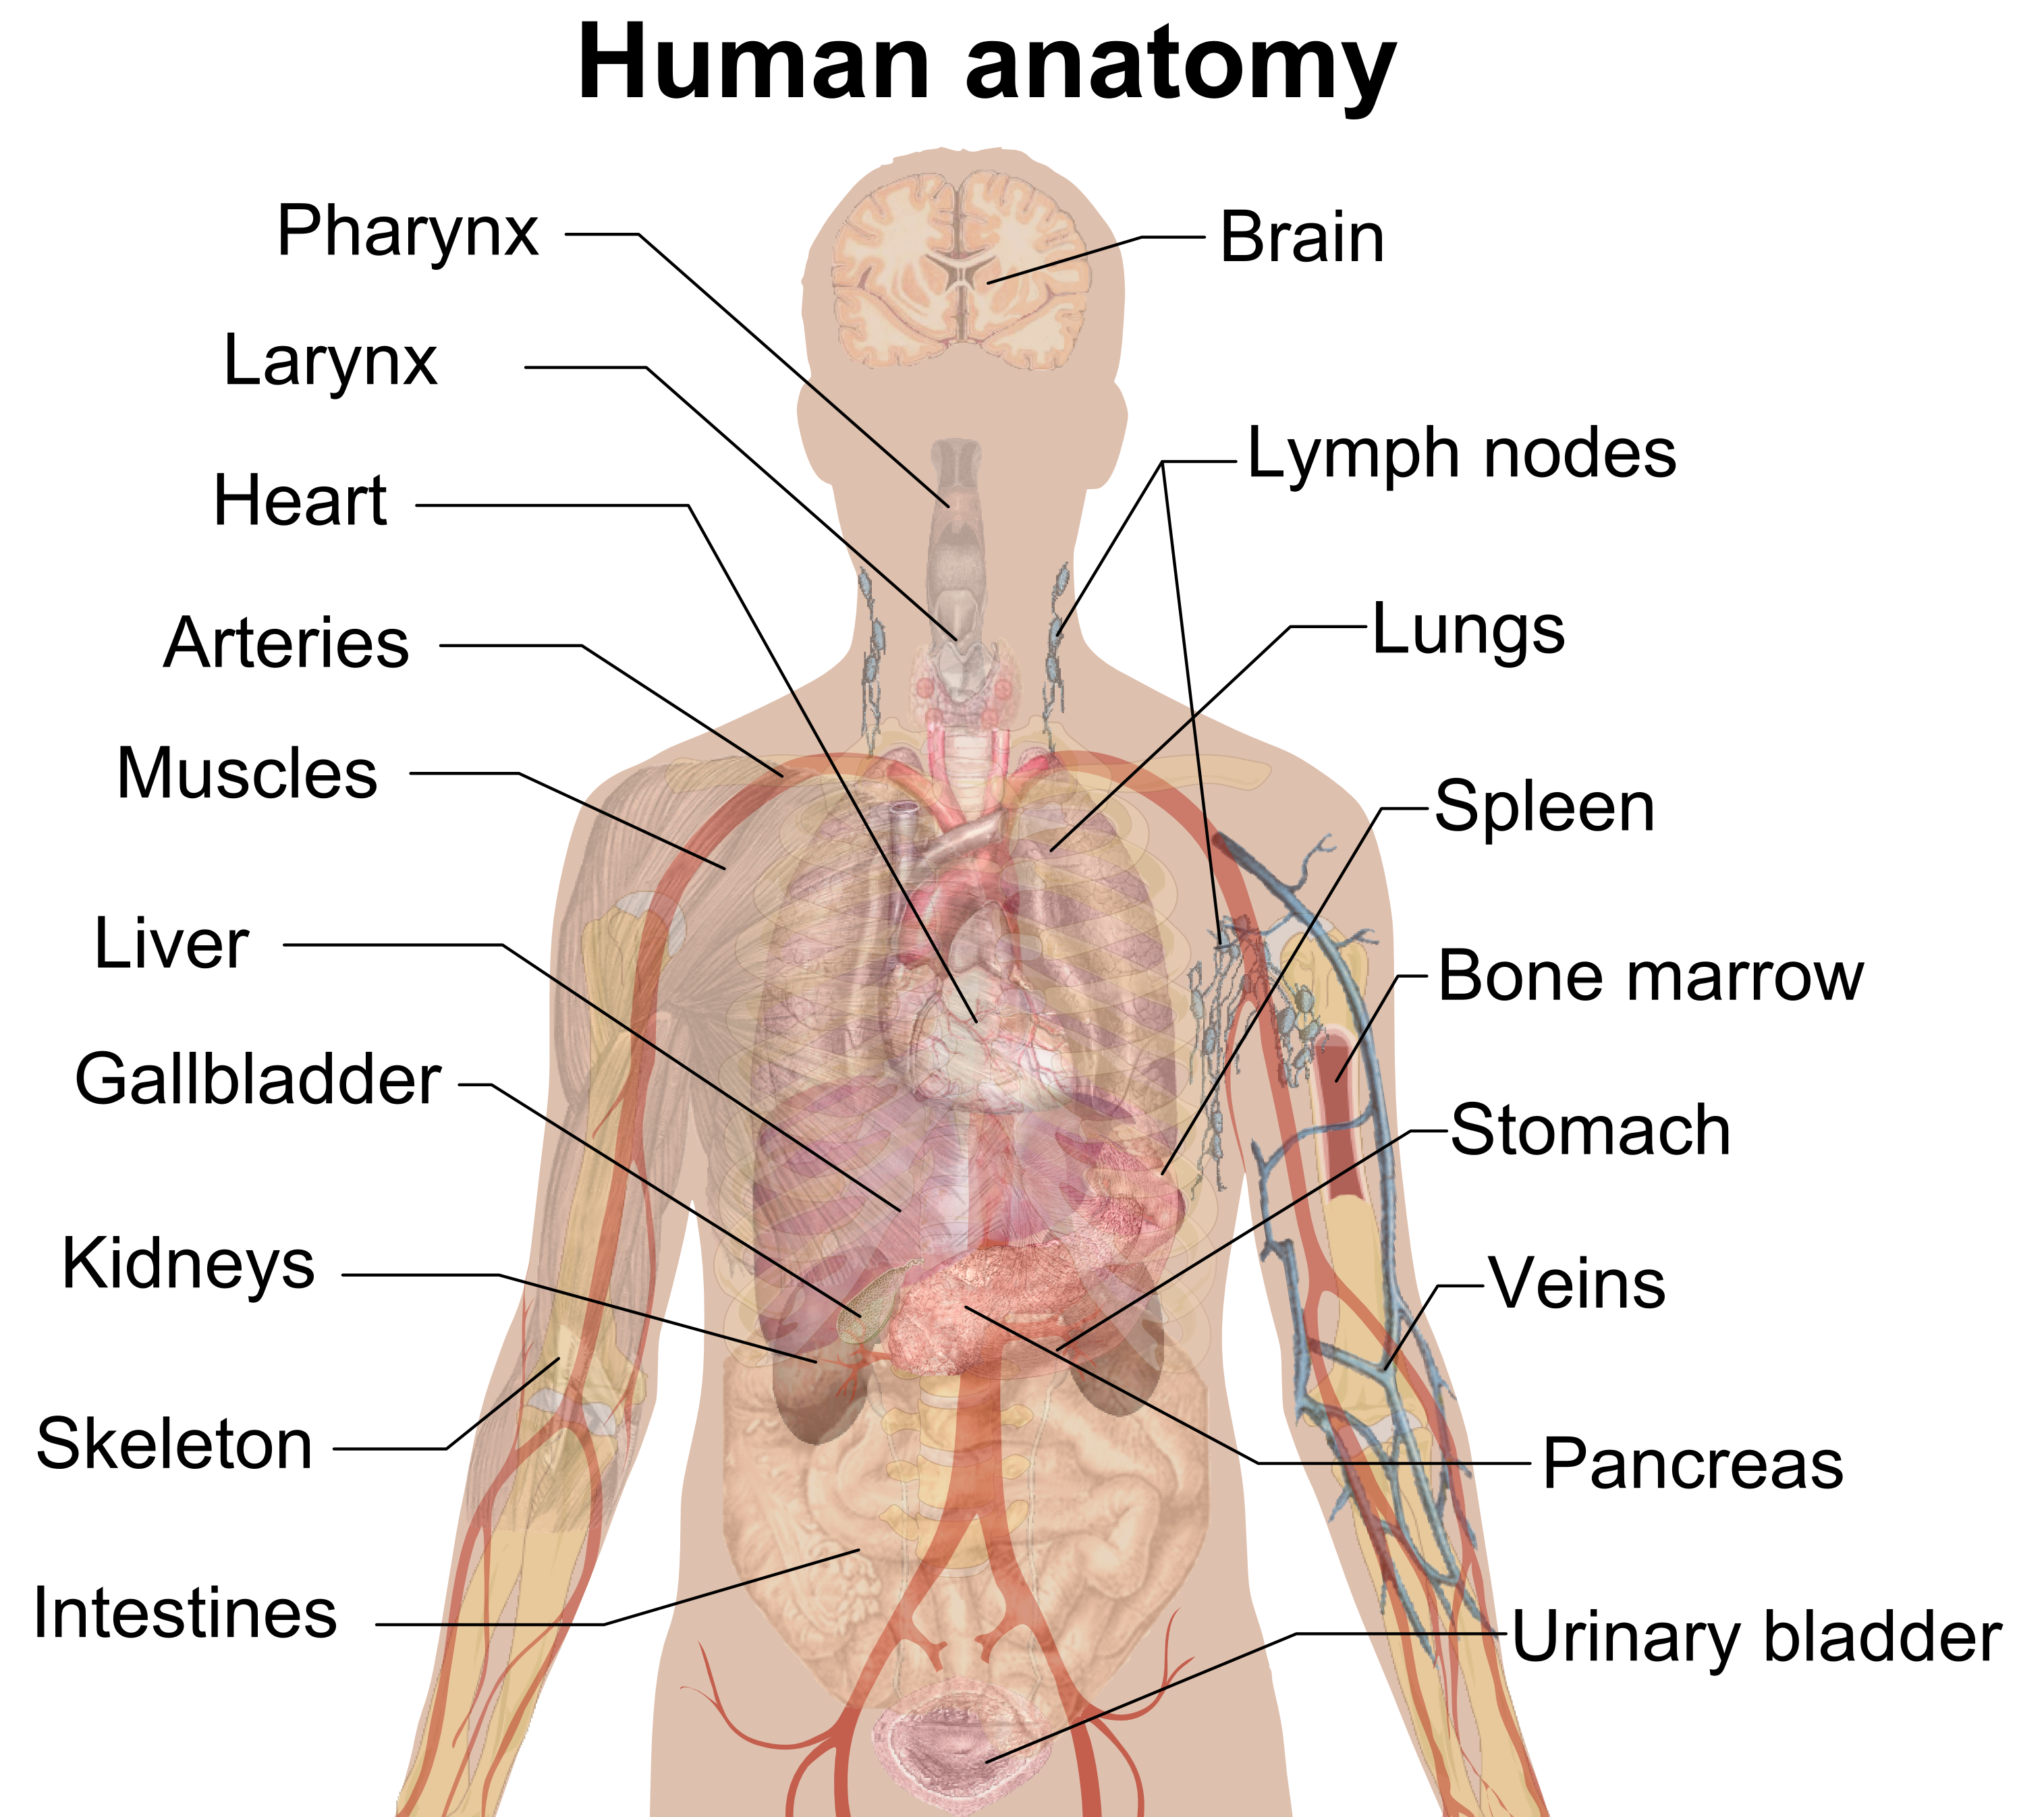 Anatomía del cuerpo humano PNG imagen de alta calidad